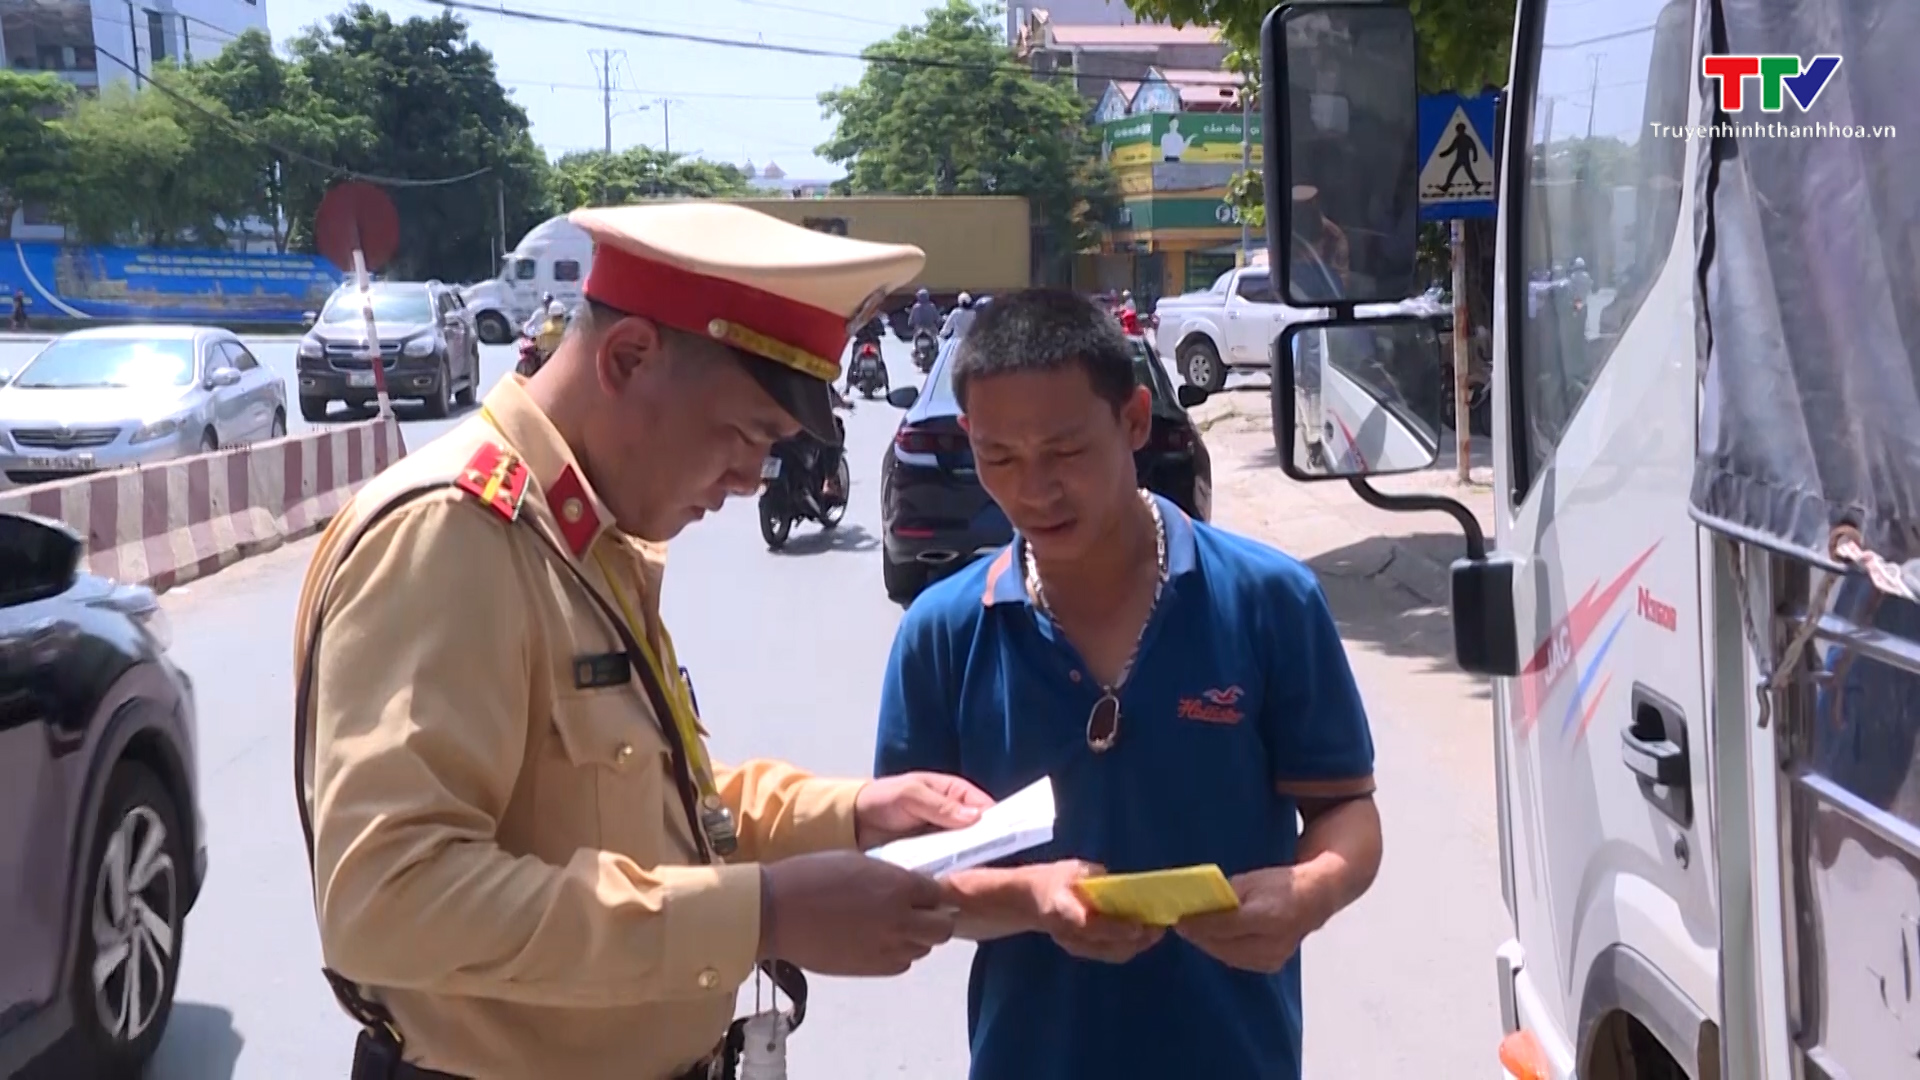 Xử lý nghiêm các hành vi vi phạm Luật giao thông đường sắt tại các đường ngang dân sinh trên địa bàn thị xã Bỉm Sơn - Ảnh 2.